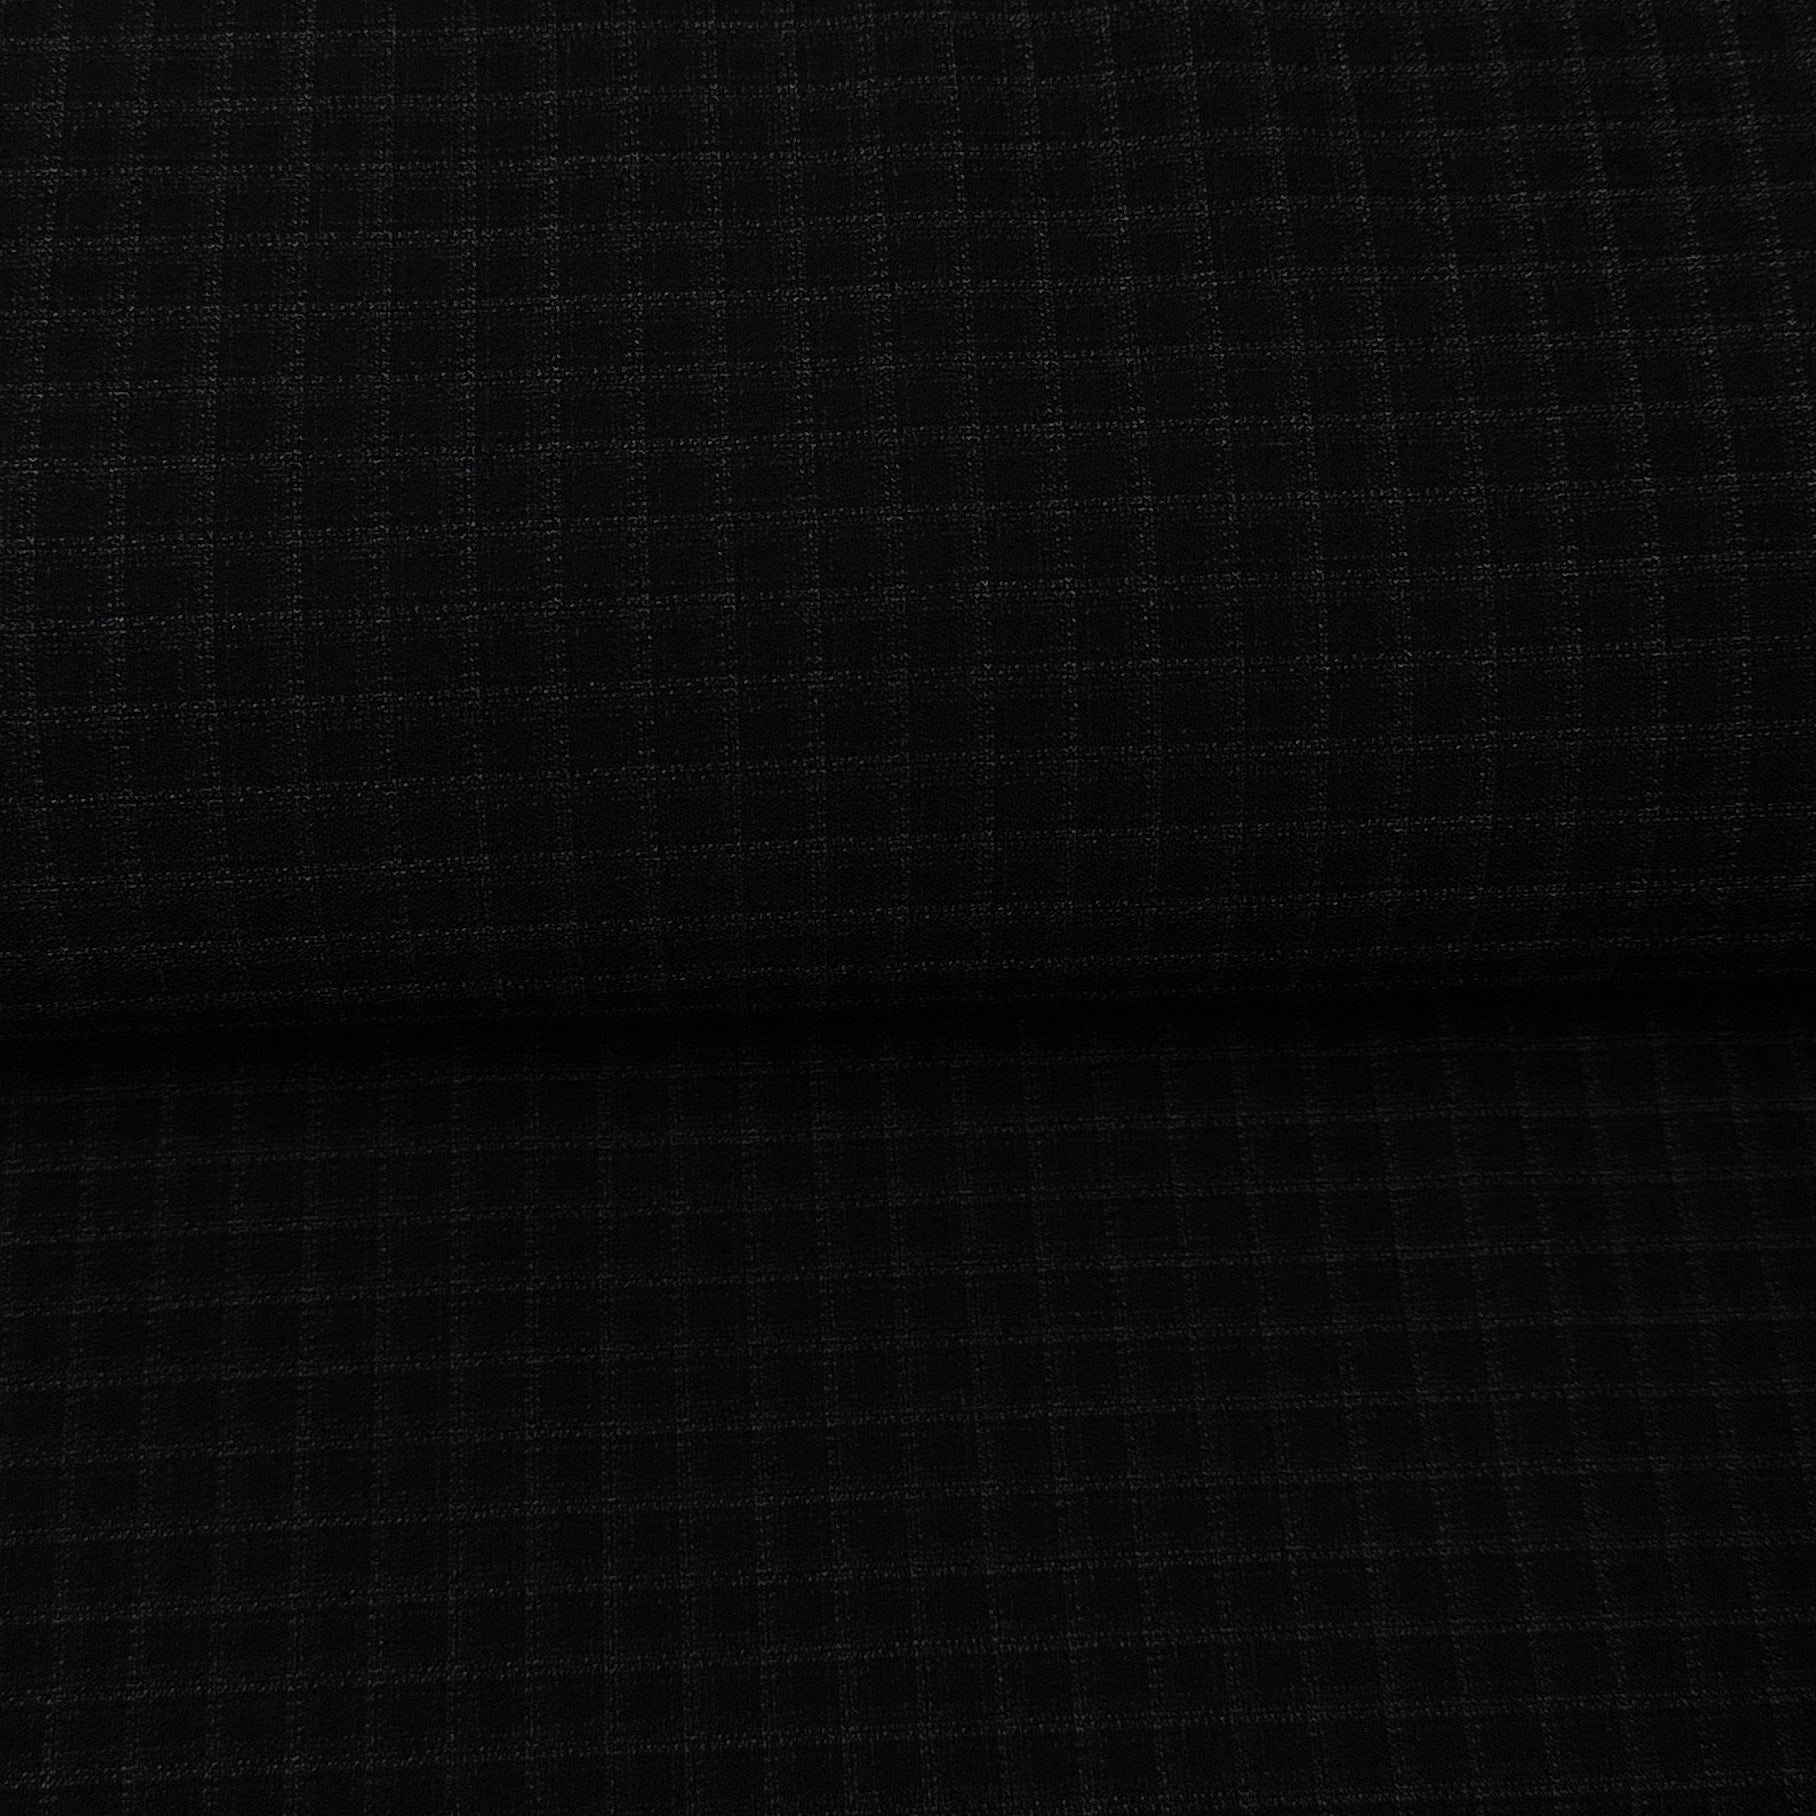 Carreaux noir - Tissu pour costume écoresponsable